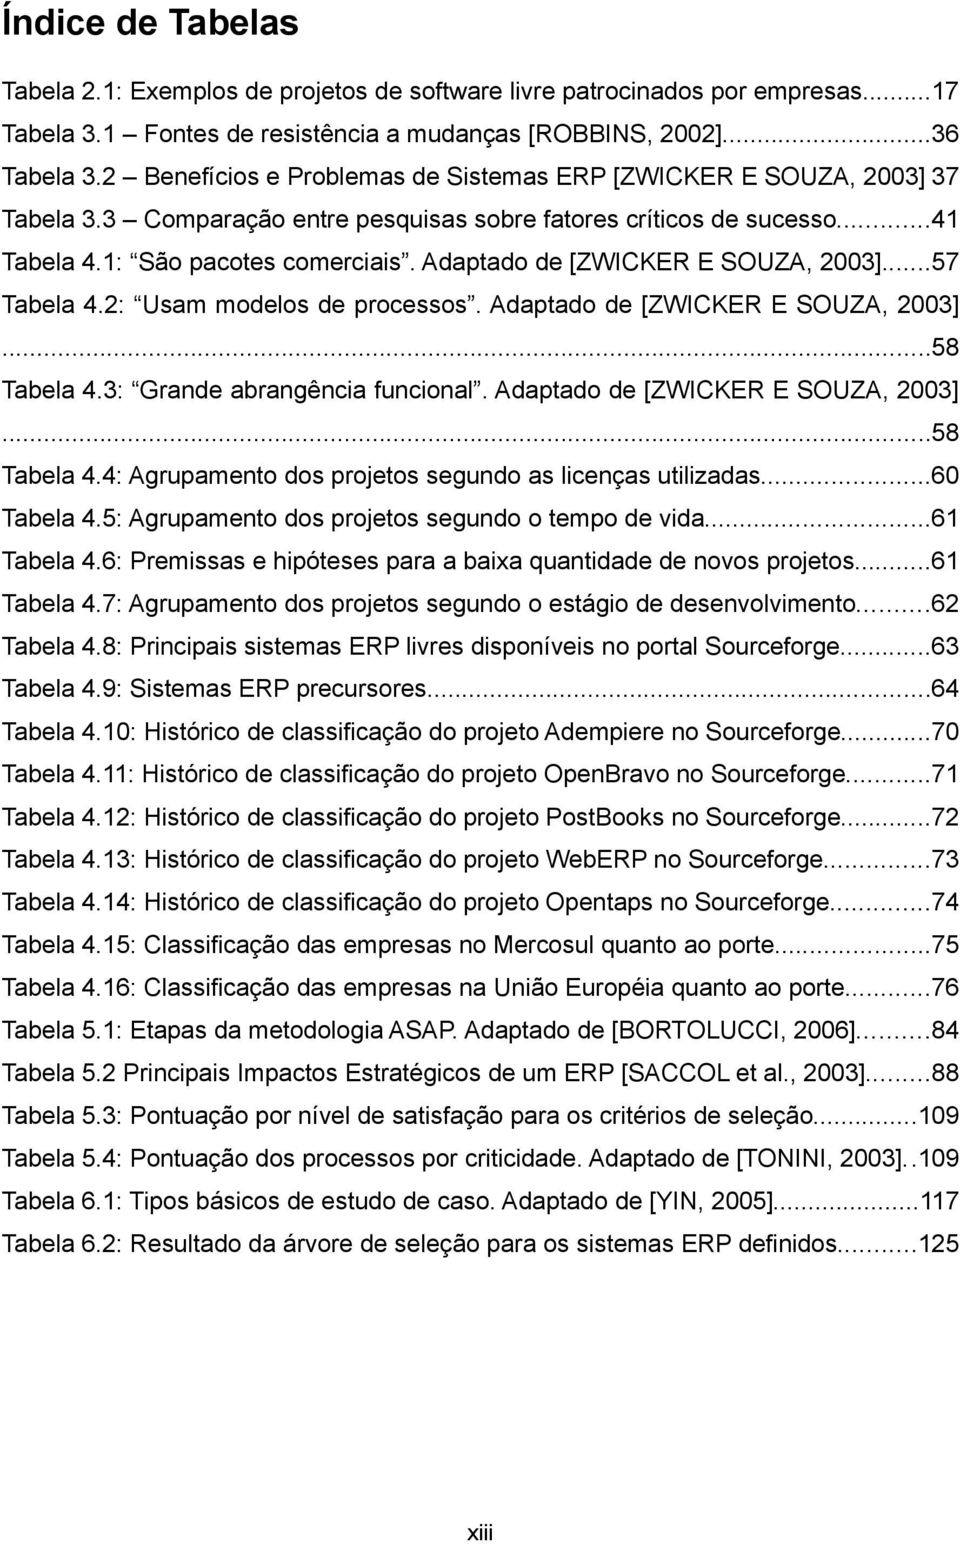 Adaptado de [ZWICKER E SOUZA, 2003]...57 Tabela 4.2: Usam modelos de processos. Adaptado de [ZWICKER E SOUZA, 2003]...58 Tabela 4.3: Grande abrangência funcional. Adaptado de [ZWICKER E SOUZA, 2003]...58 Tabela 4.4: Agrupamento dos projetos segundo as licenças utilizadas.